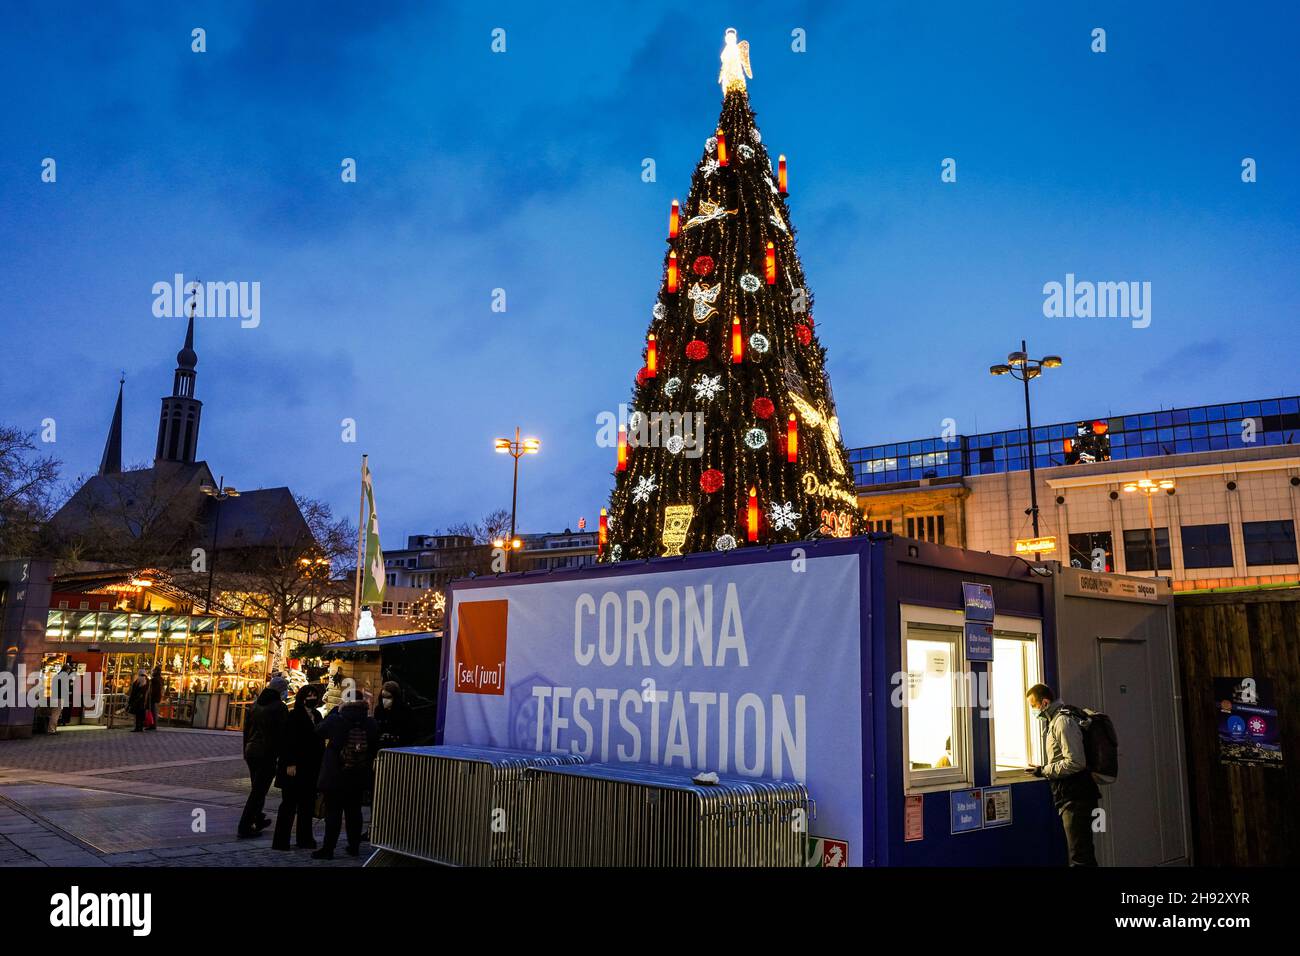 Dortmund, 3.12.2021: Corona-Teststation vor dem weltweit größten Weihnachtsbaum auf dem Dortmunder Weihnachtsmarkt 2021, der wegen der Corona-Pandemie in der vierten Welle unter 3G-Maßnahmen (geimpft, genesen und getestet) durchgeführt wird Foto de stock